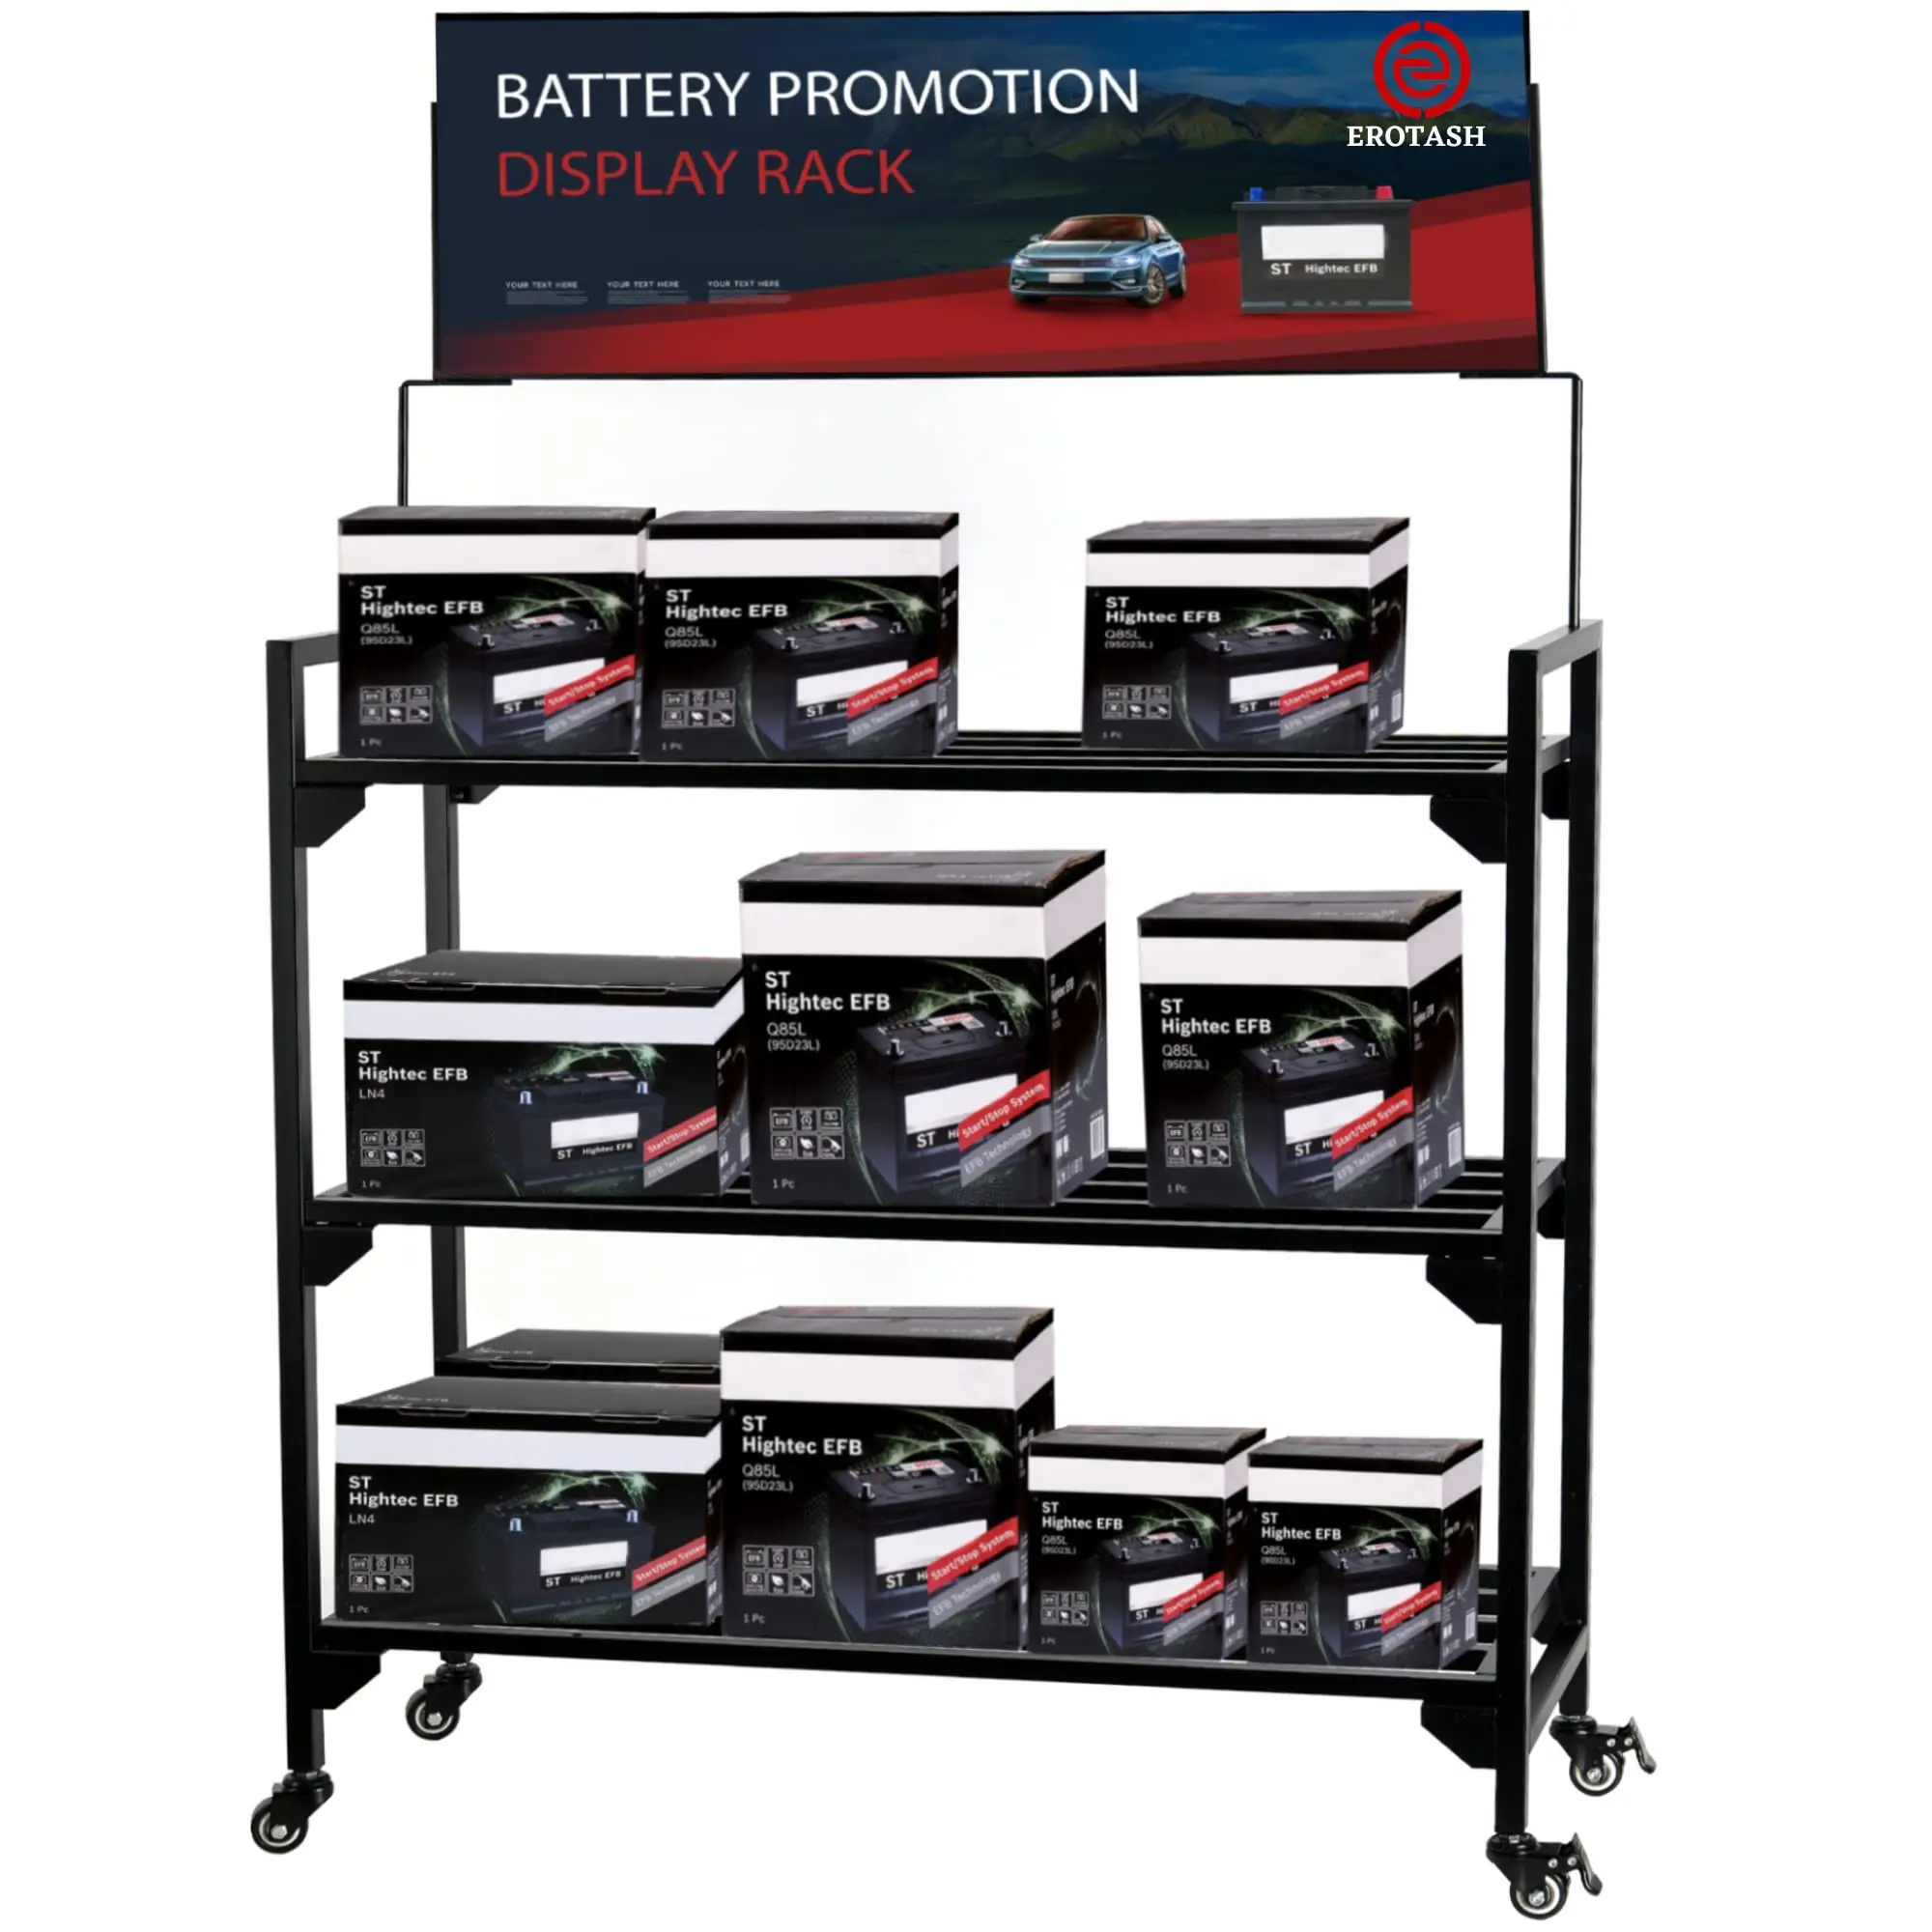 diseño de estanteria para guardar baterias de carros - Cuánto mide una estanteria convencional